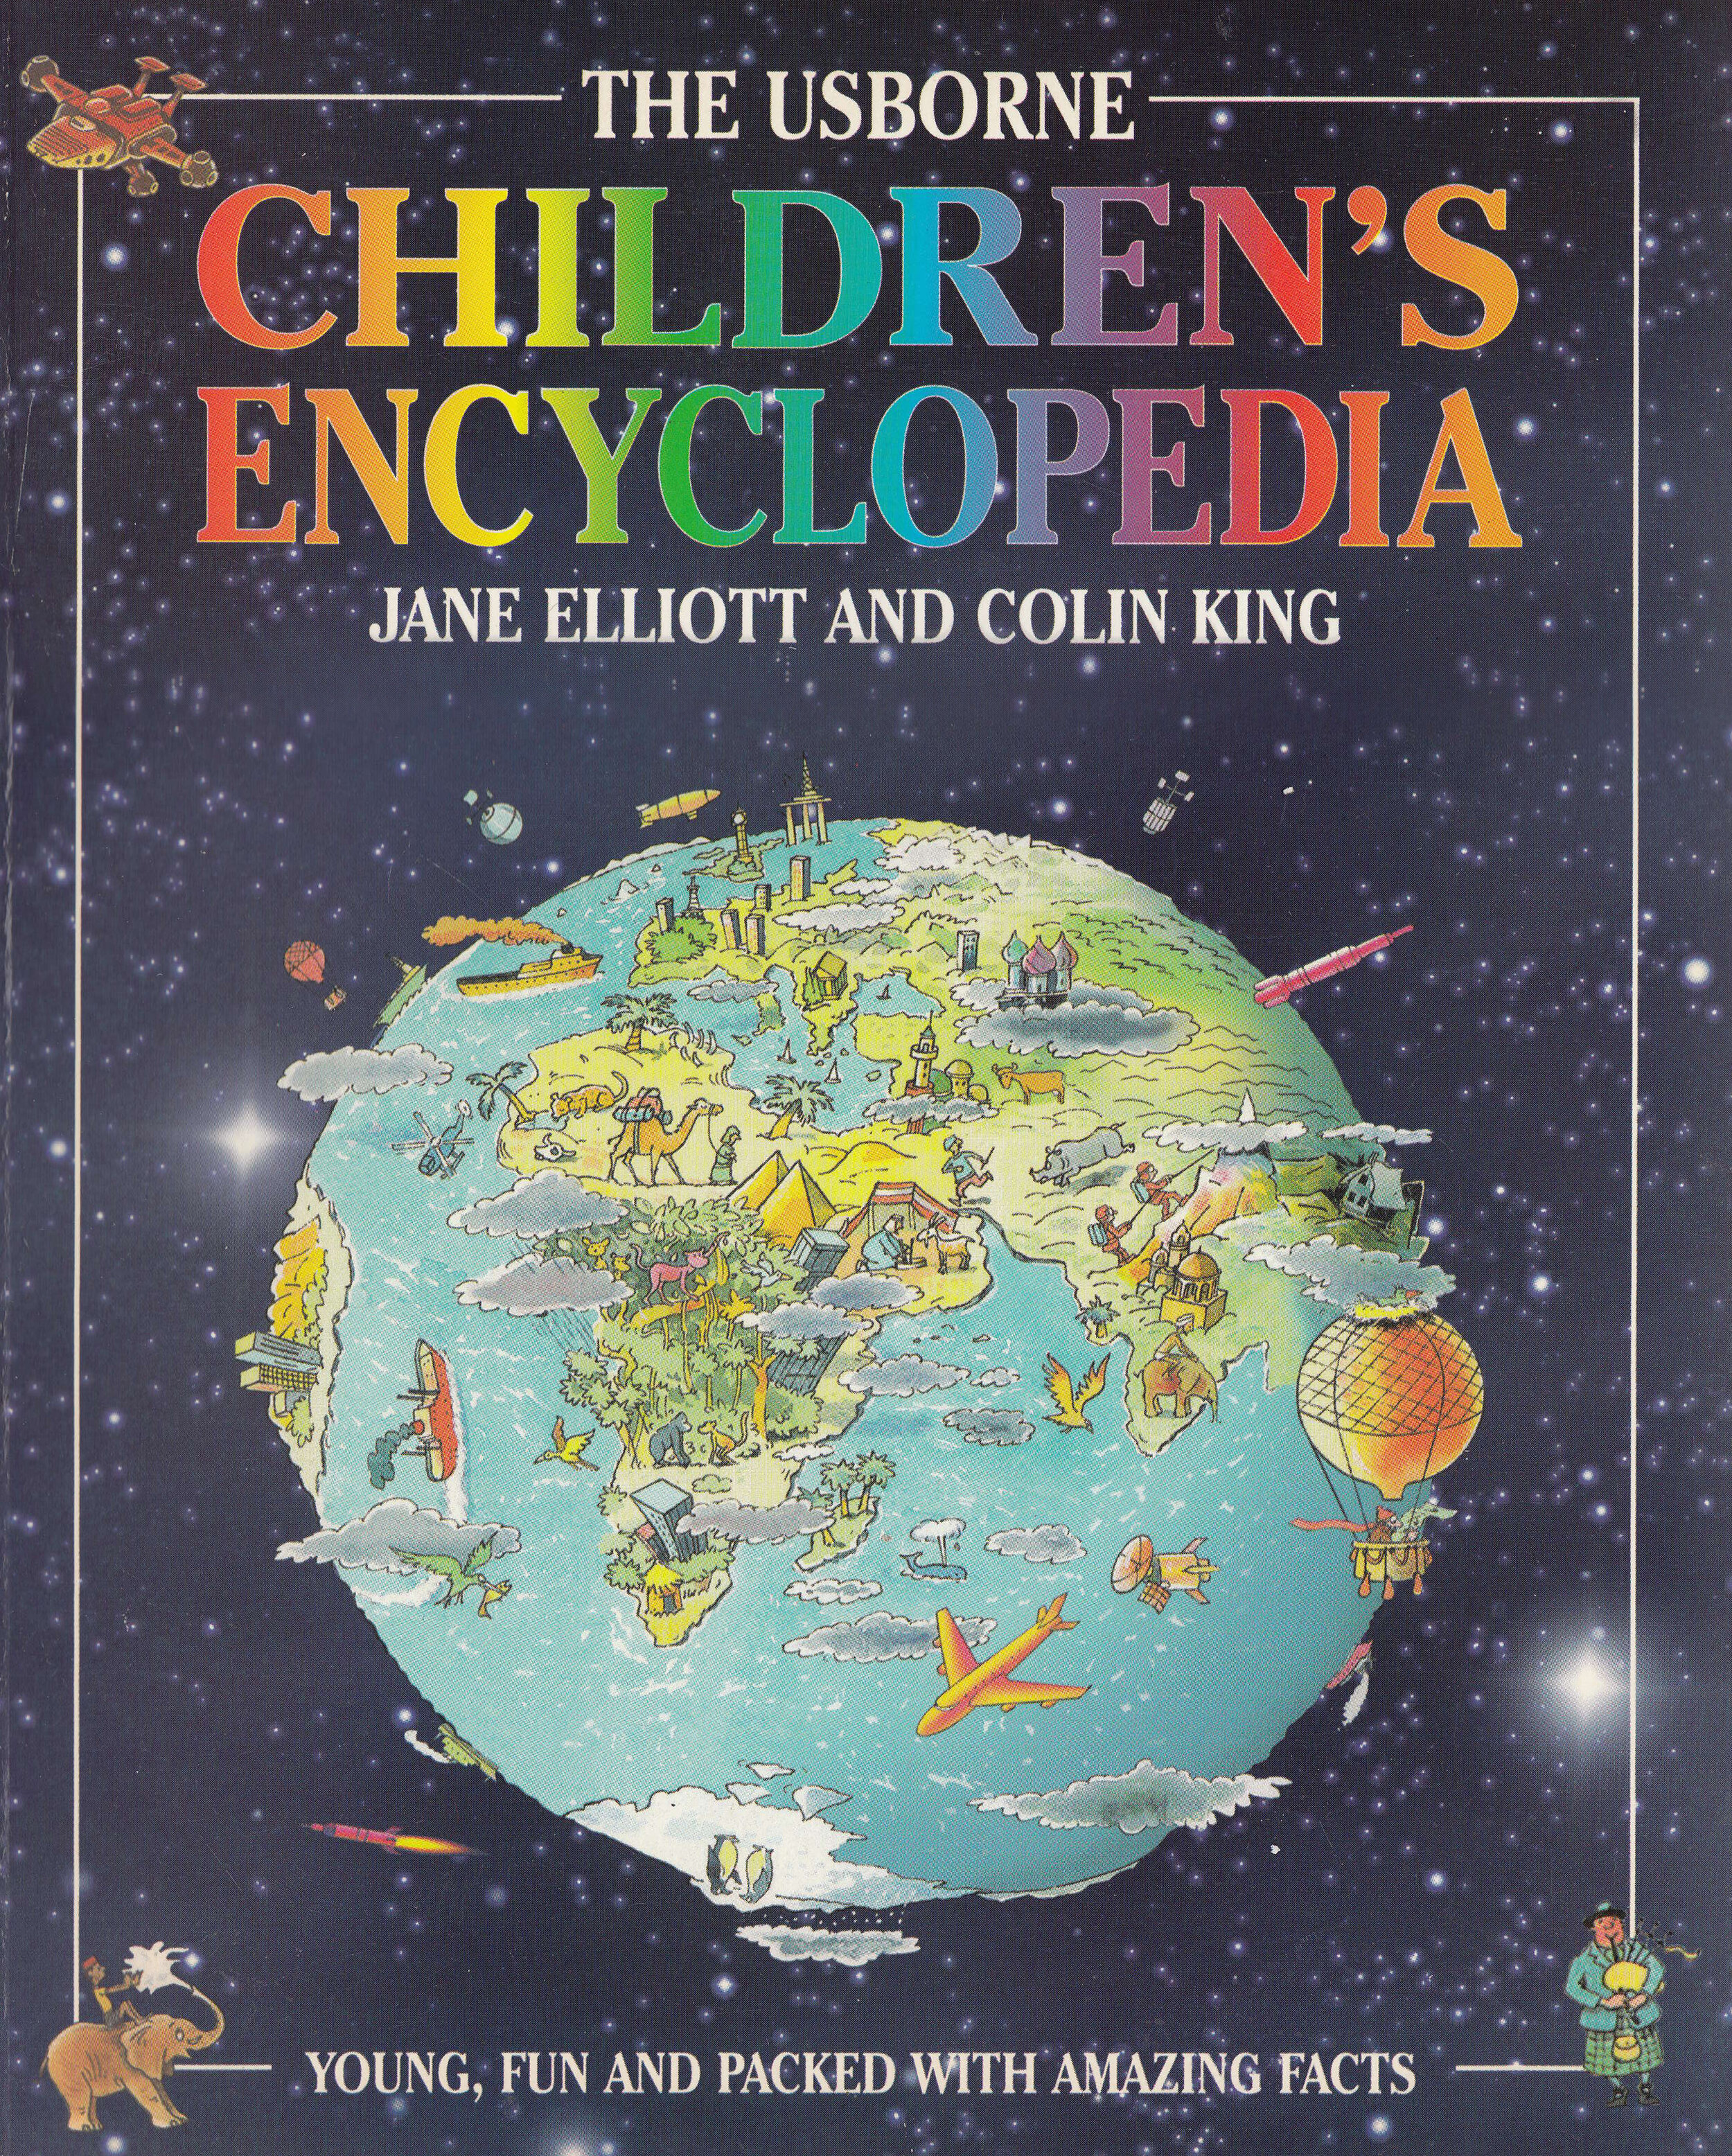 ChildrensEncyclopedia(Usborne).jpg